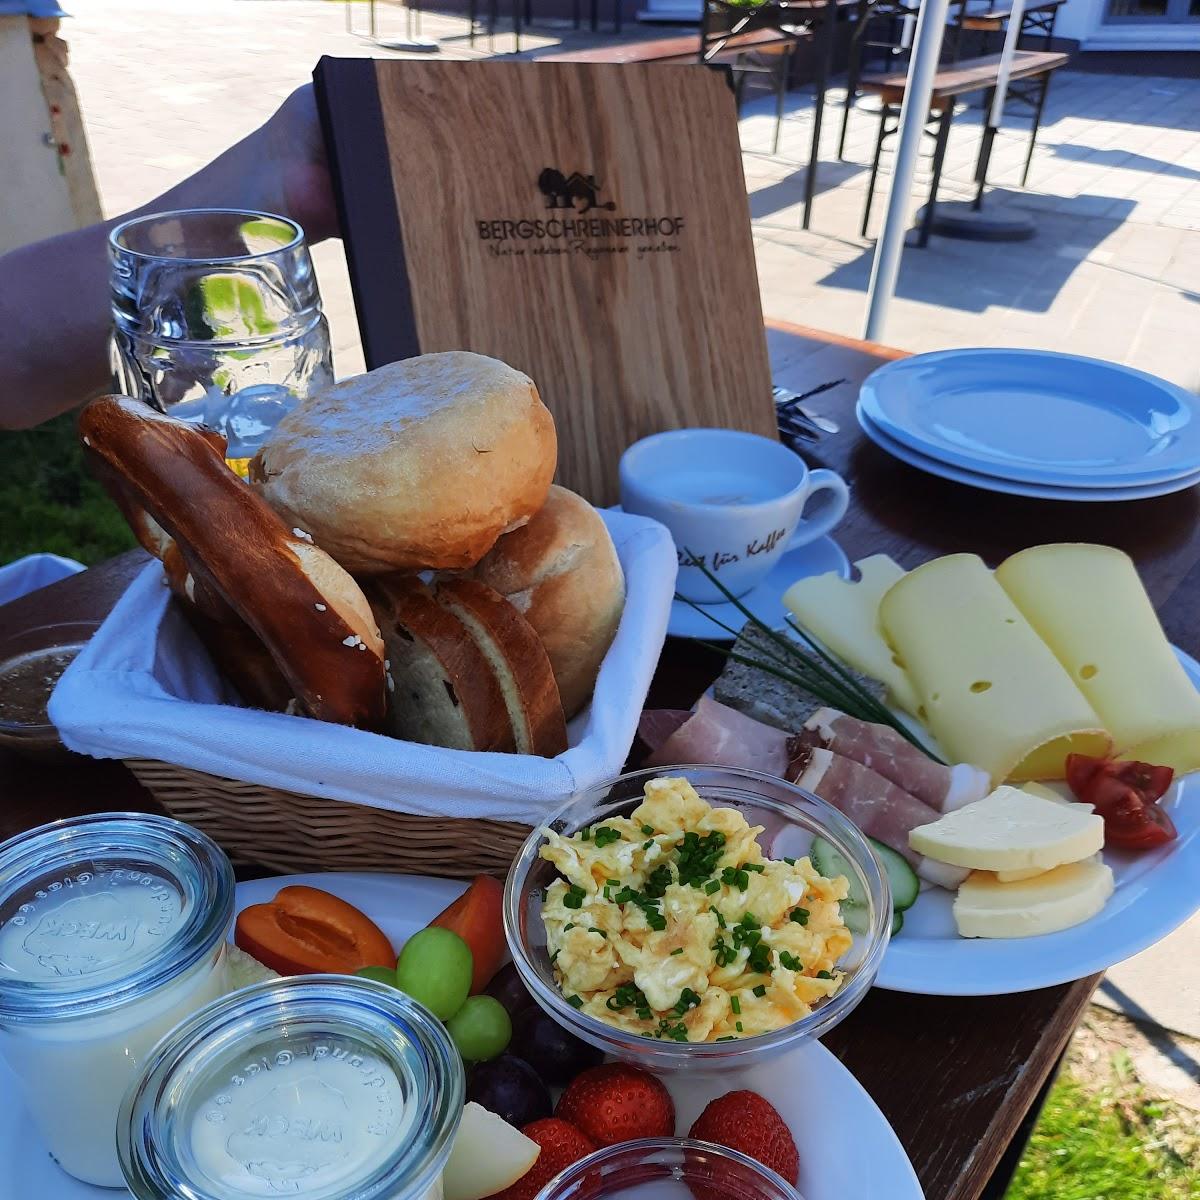 Restaurant "Bergschreinerhof | Hof-Cafe mit 24h-Fleischverkauf, Veranstaltungen & Fuhrungen" in Wolferstadt